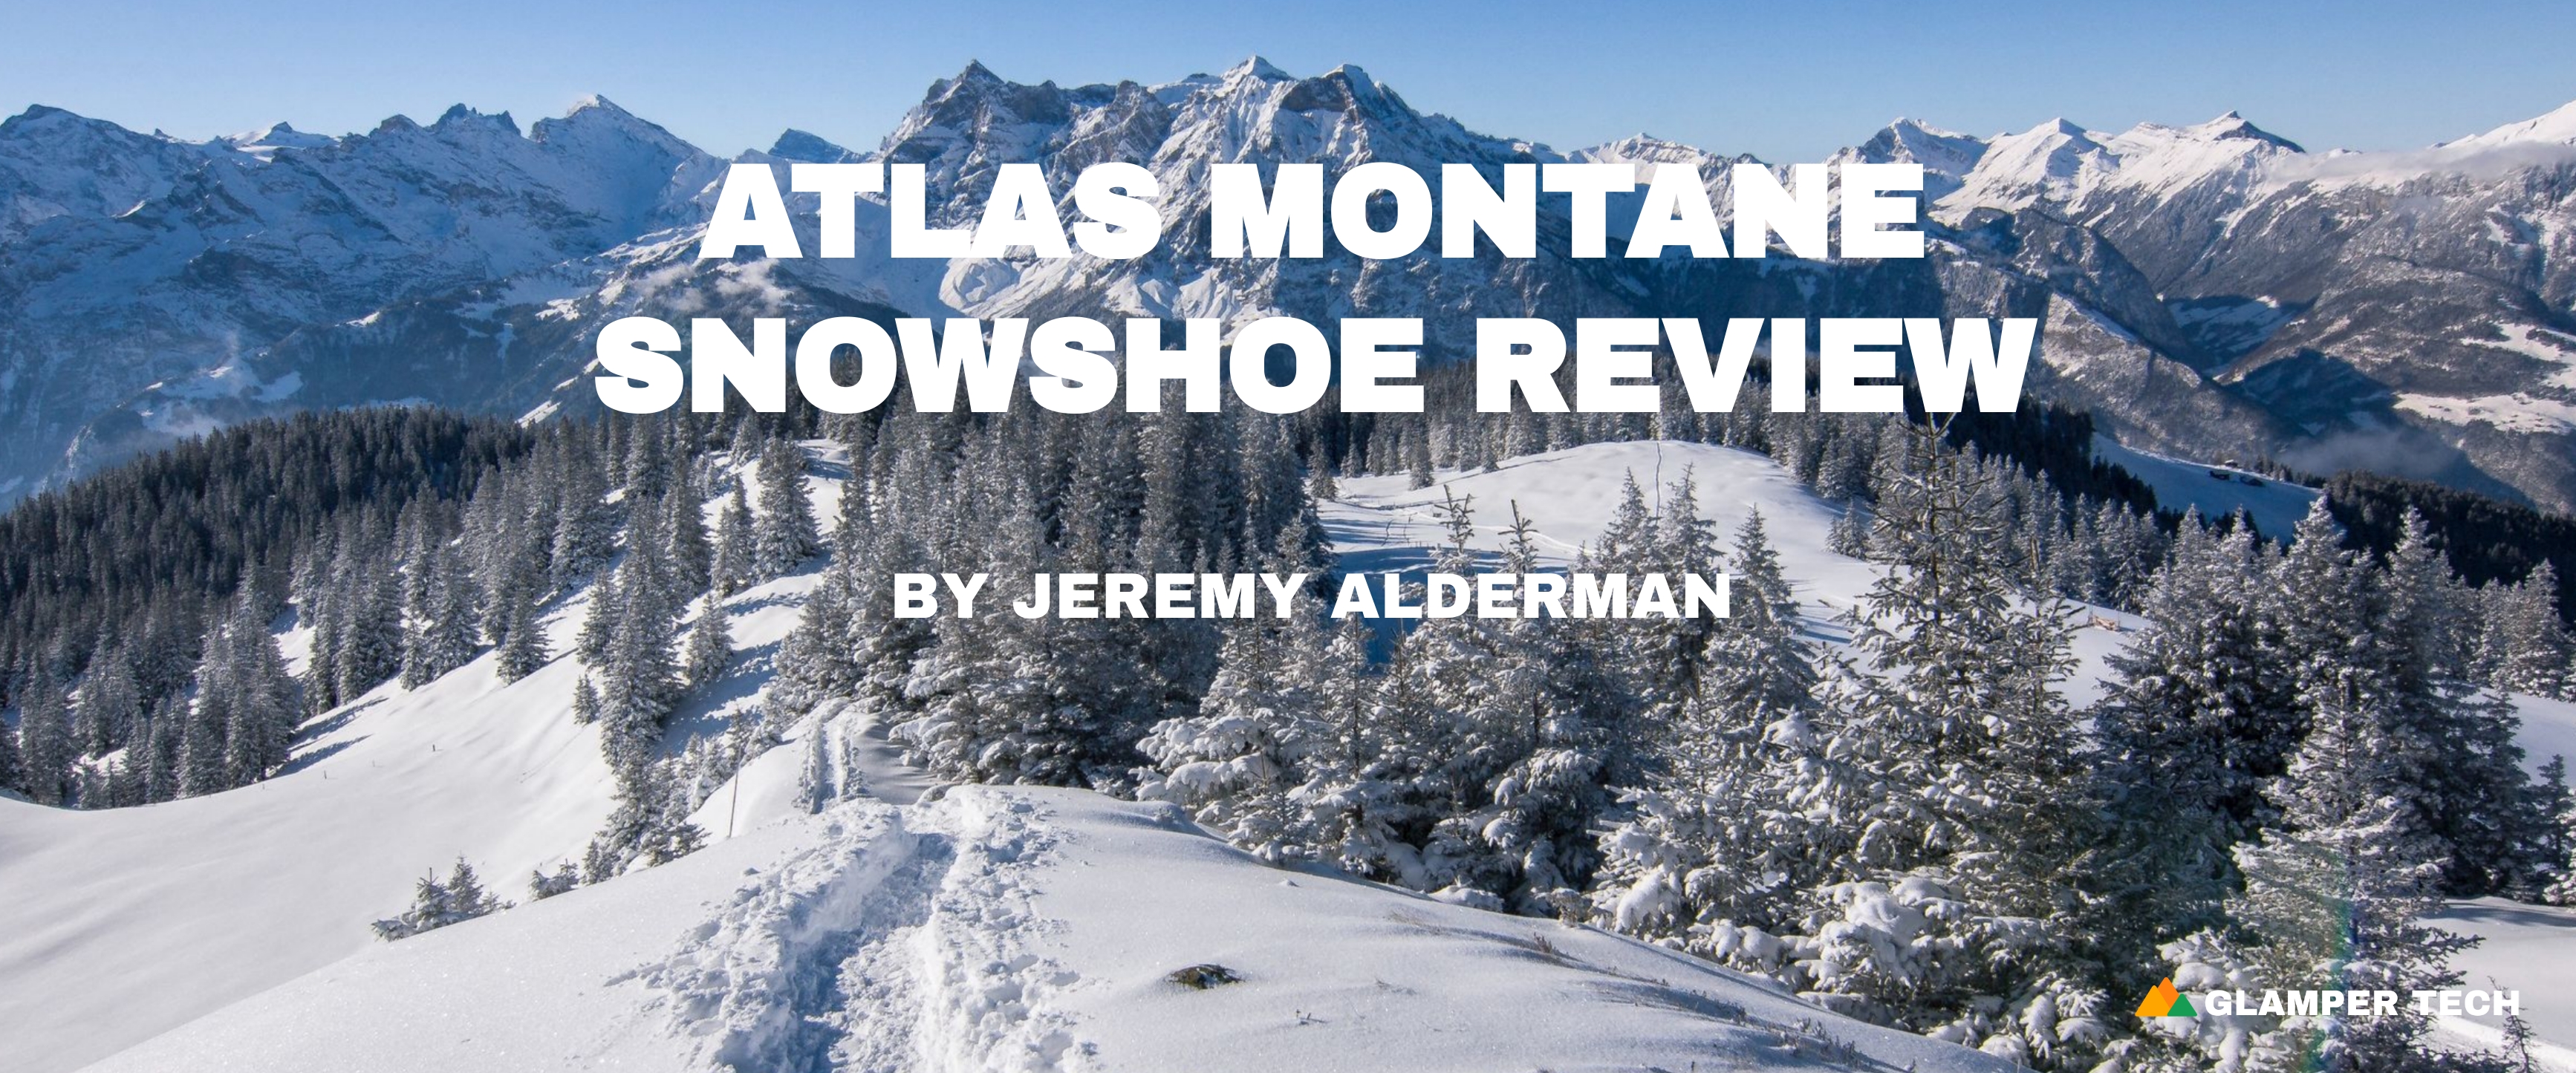 Atlas-Montane-Snowshoe-Review